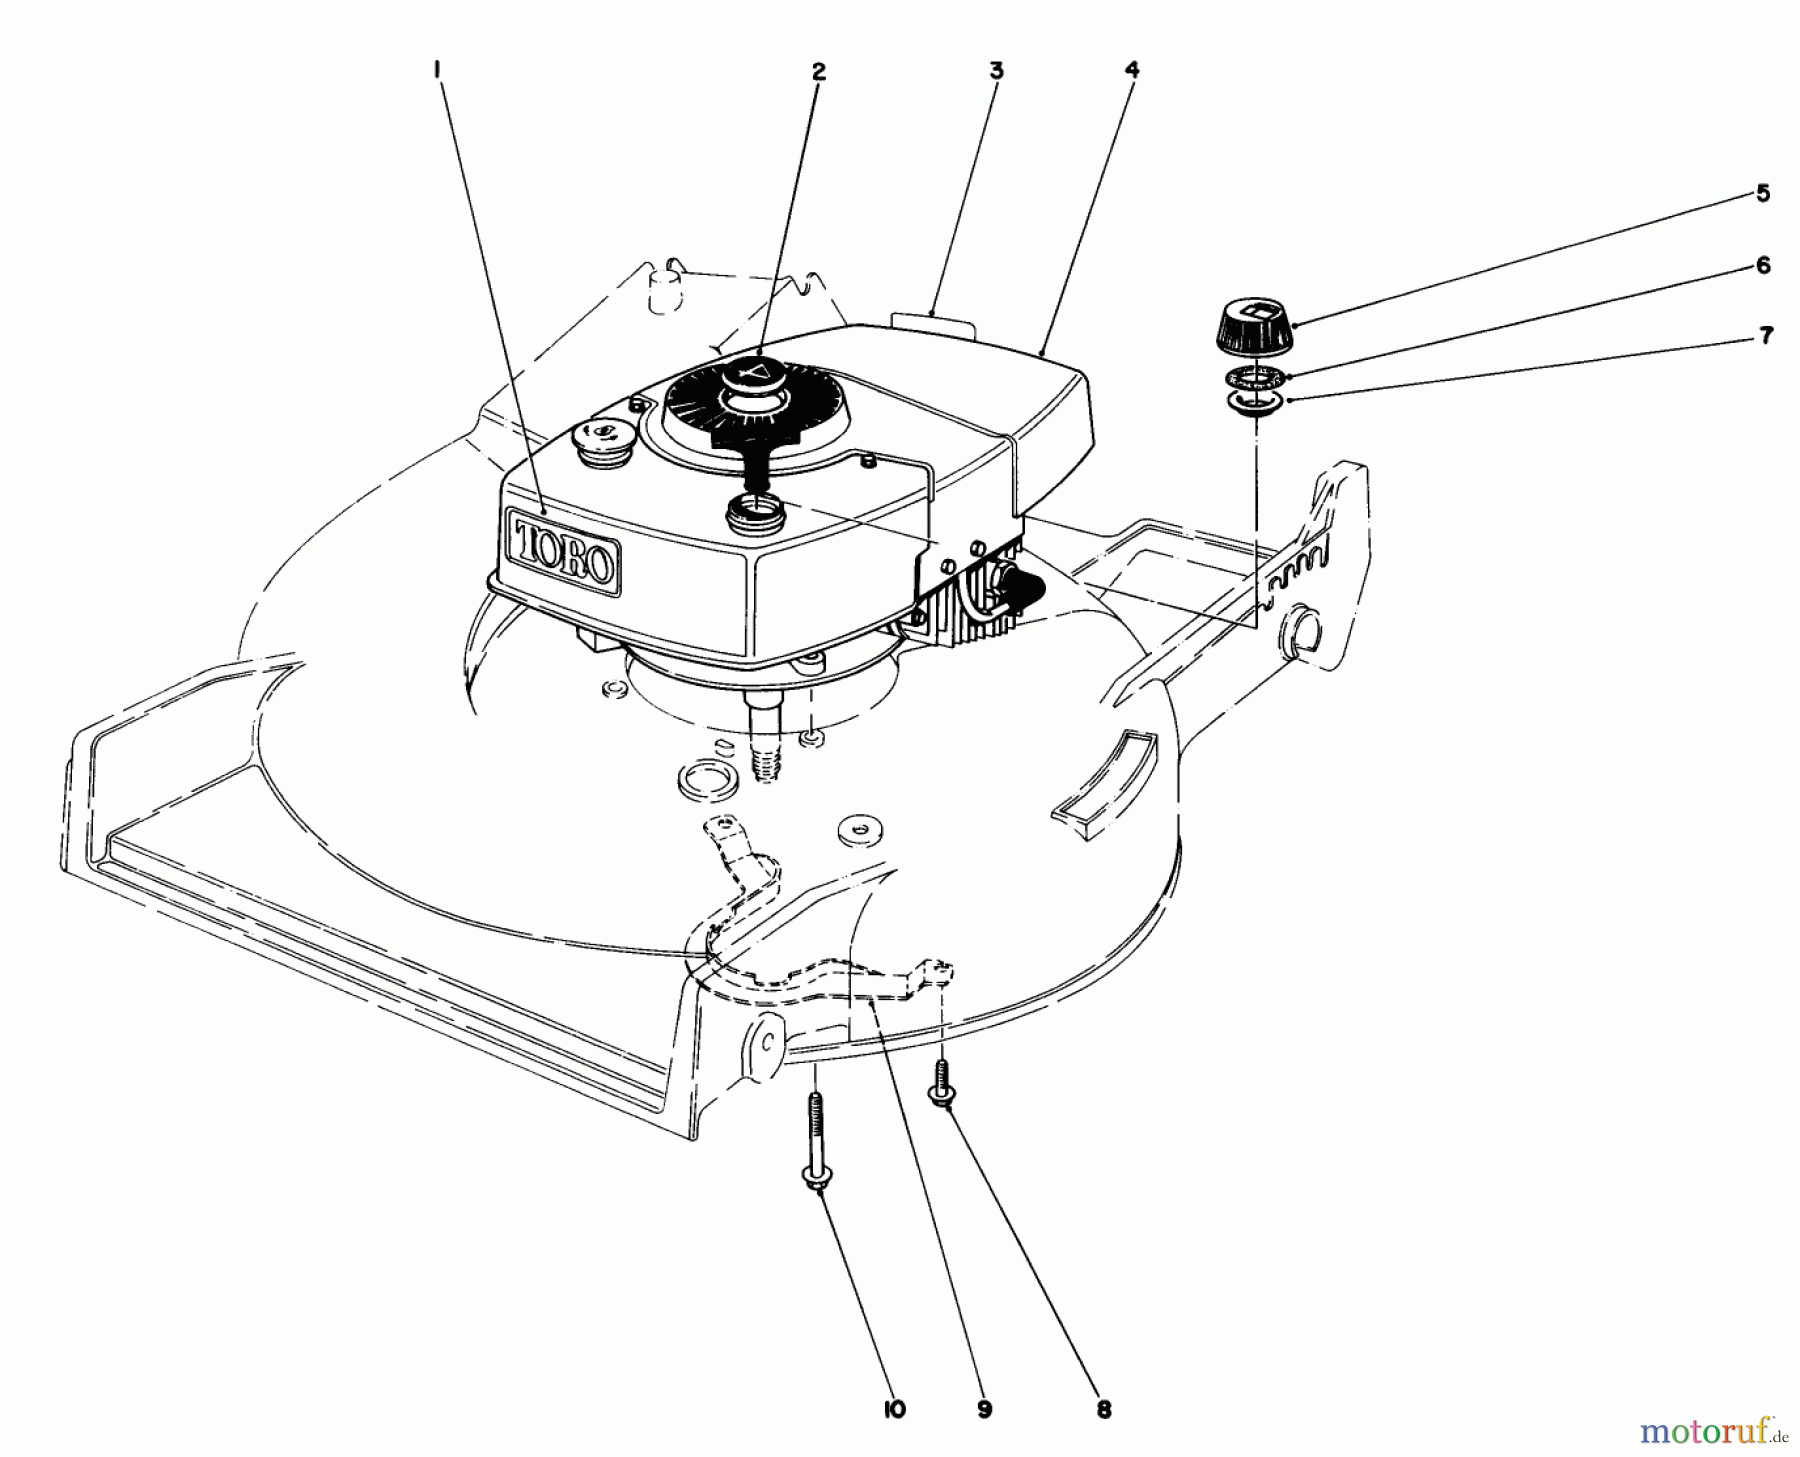  Toro Neu Mowers, Walk-Behind Seite 1 20672 - Toro Lawnmower, 1985 (5000001-5999999) ENGINE ASSEMBLY